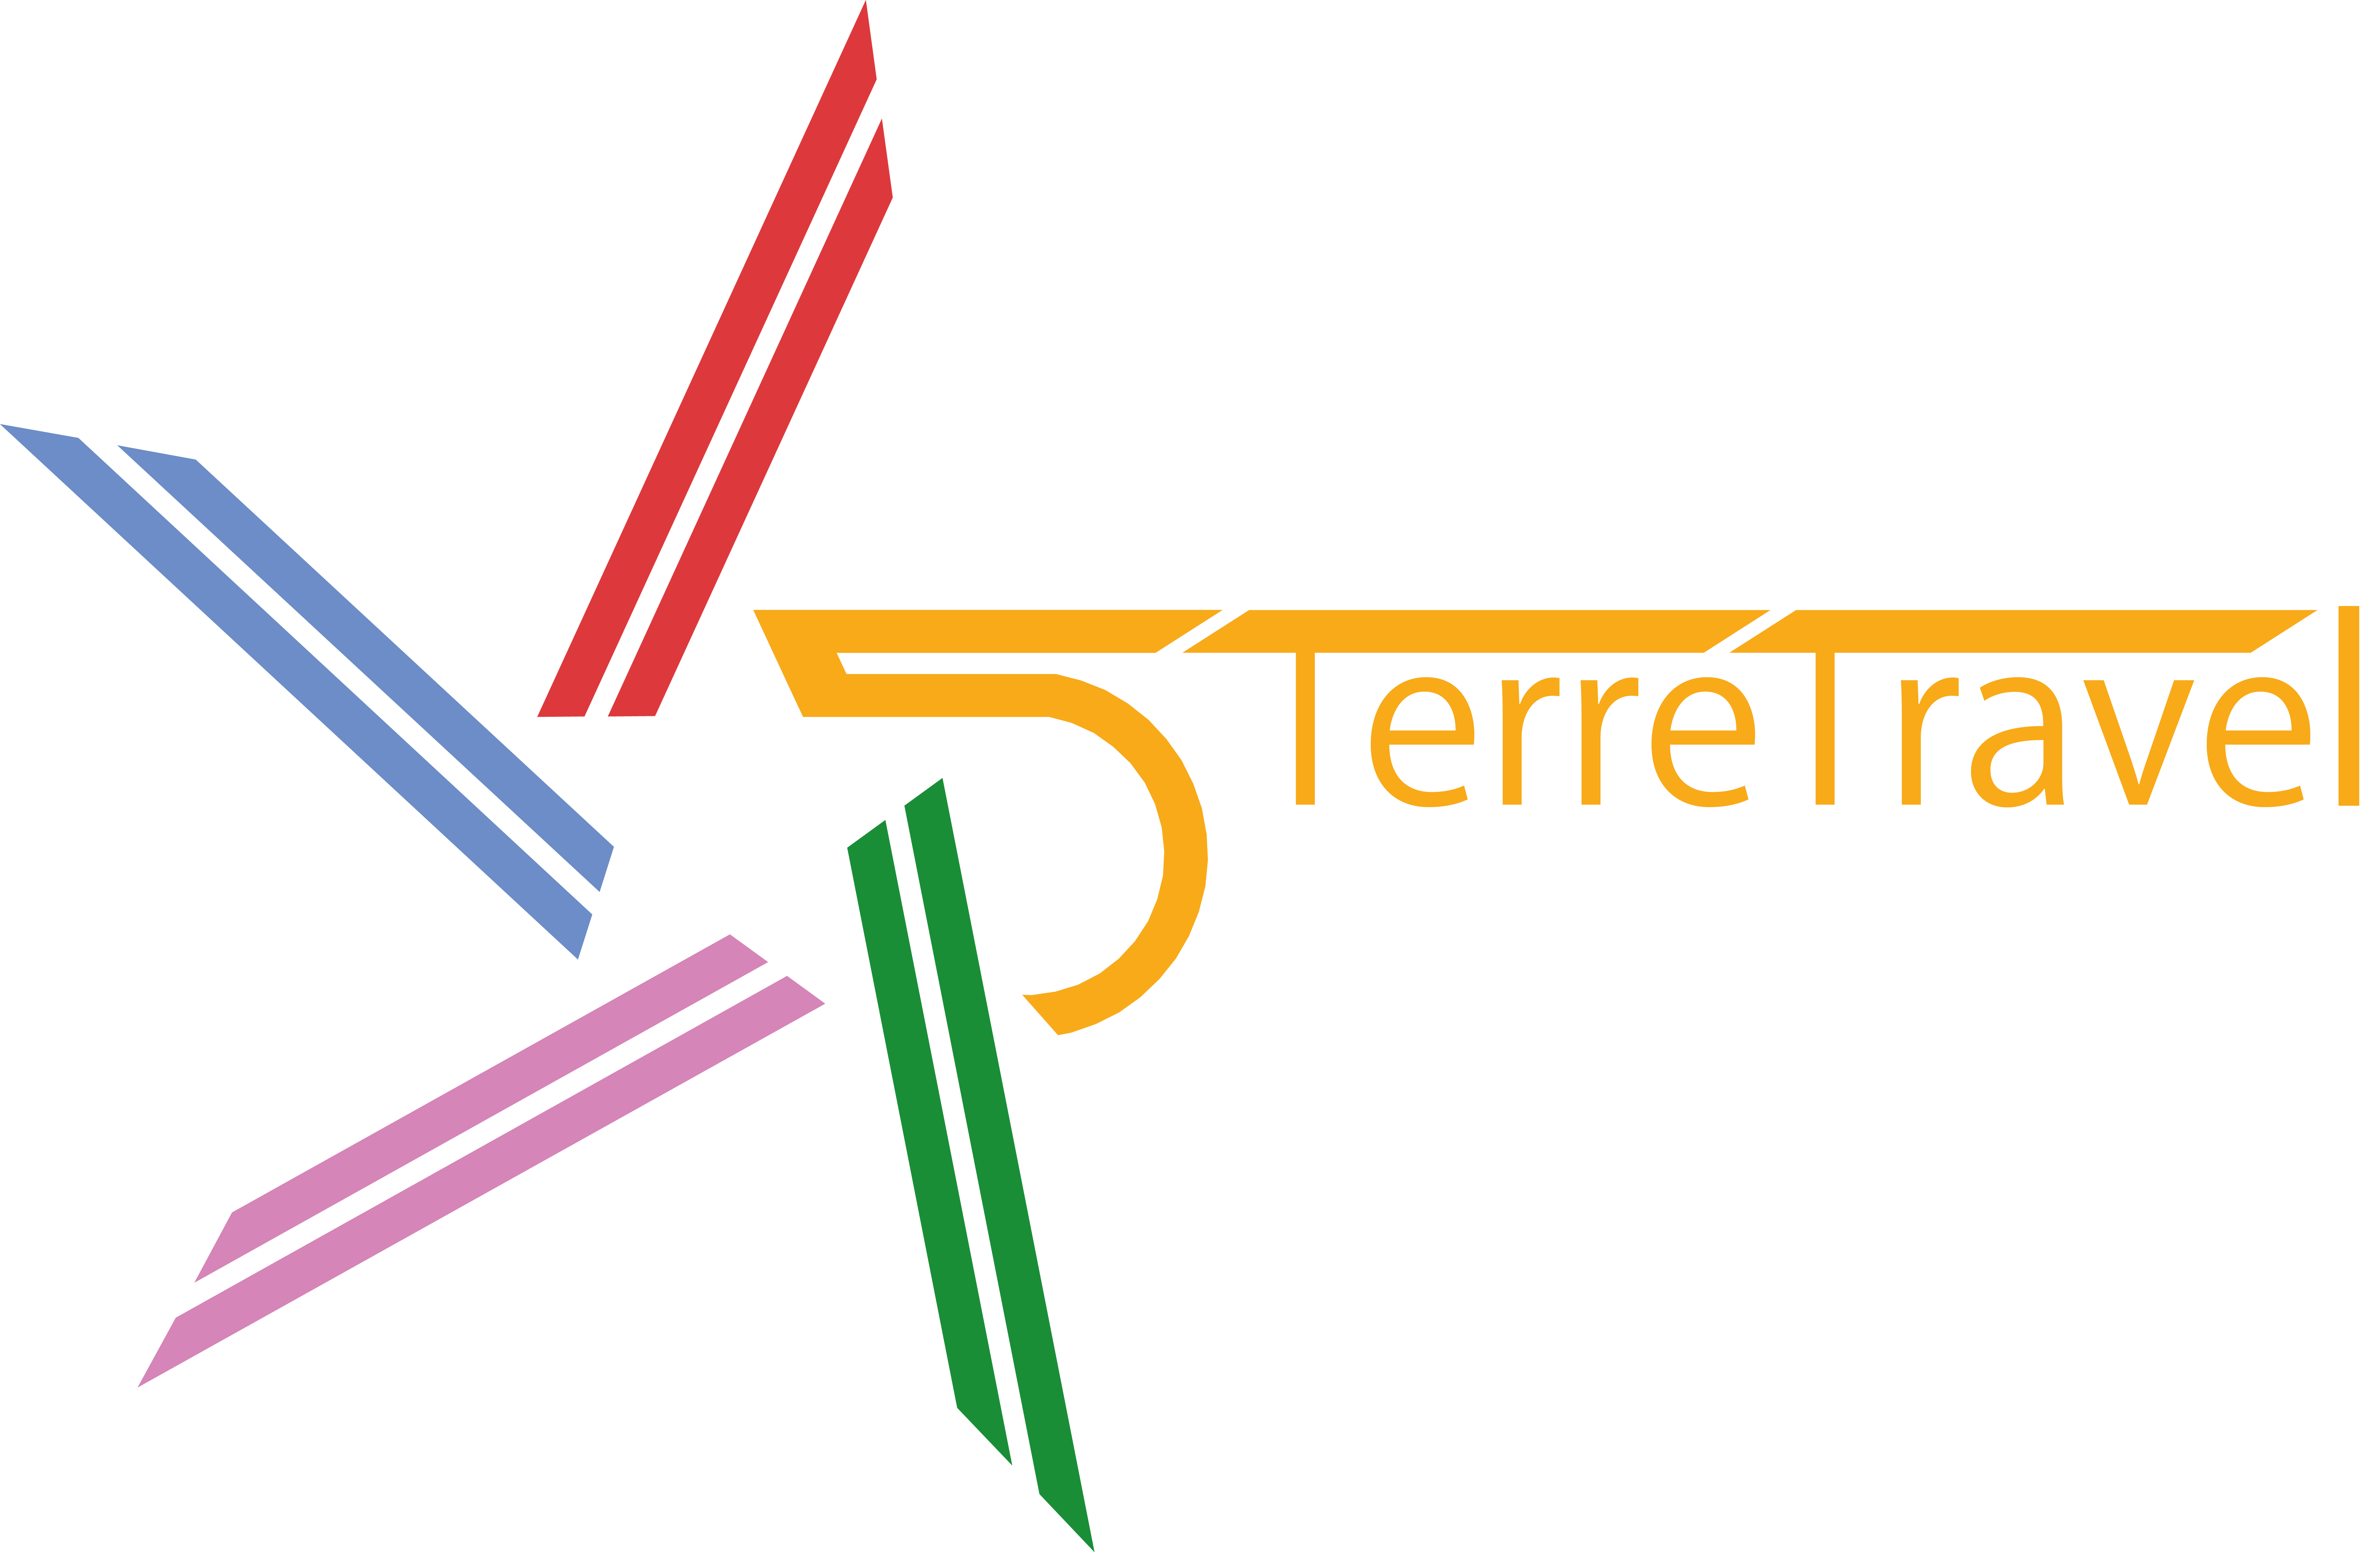 5 Terre Travel